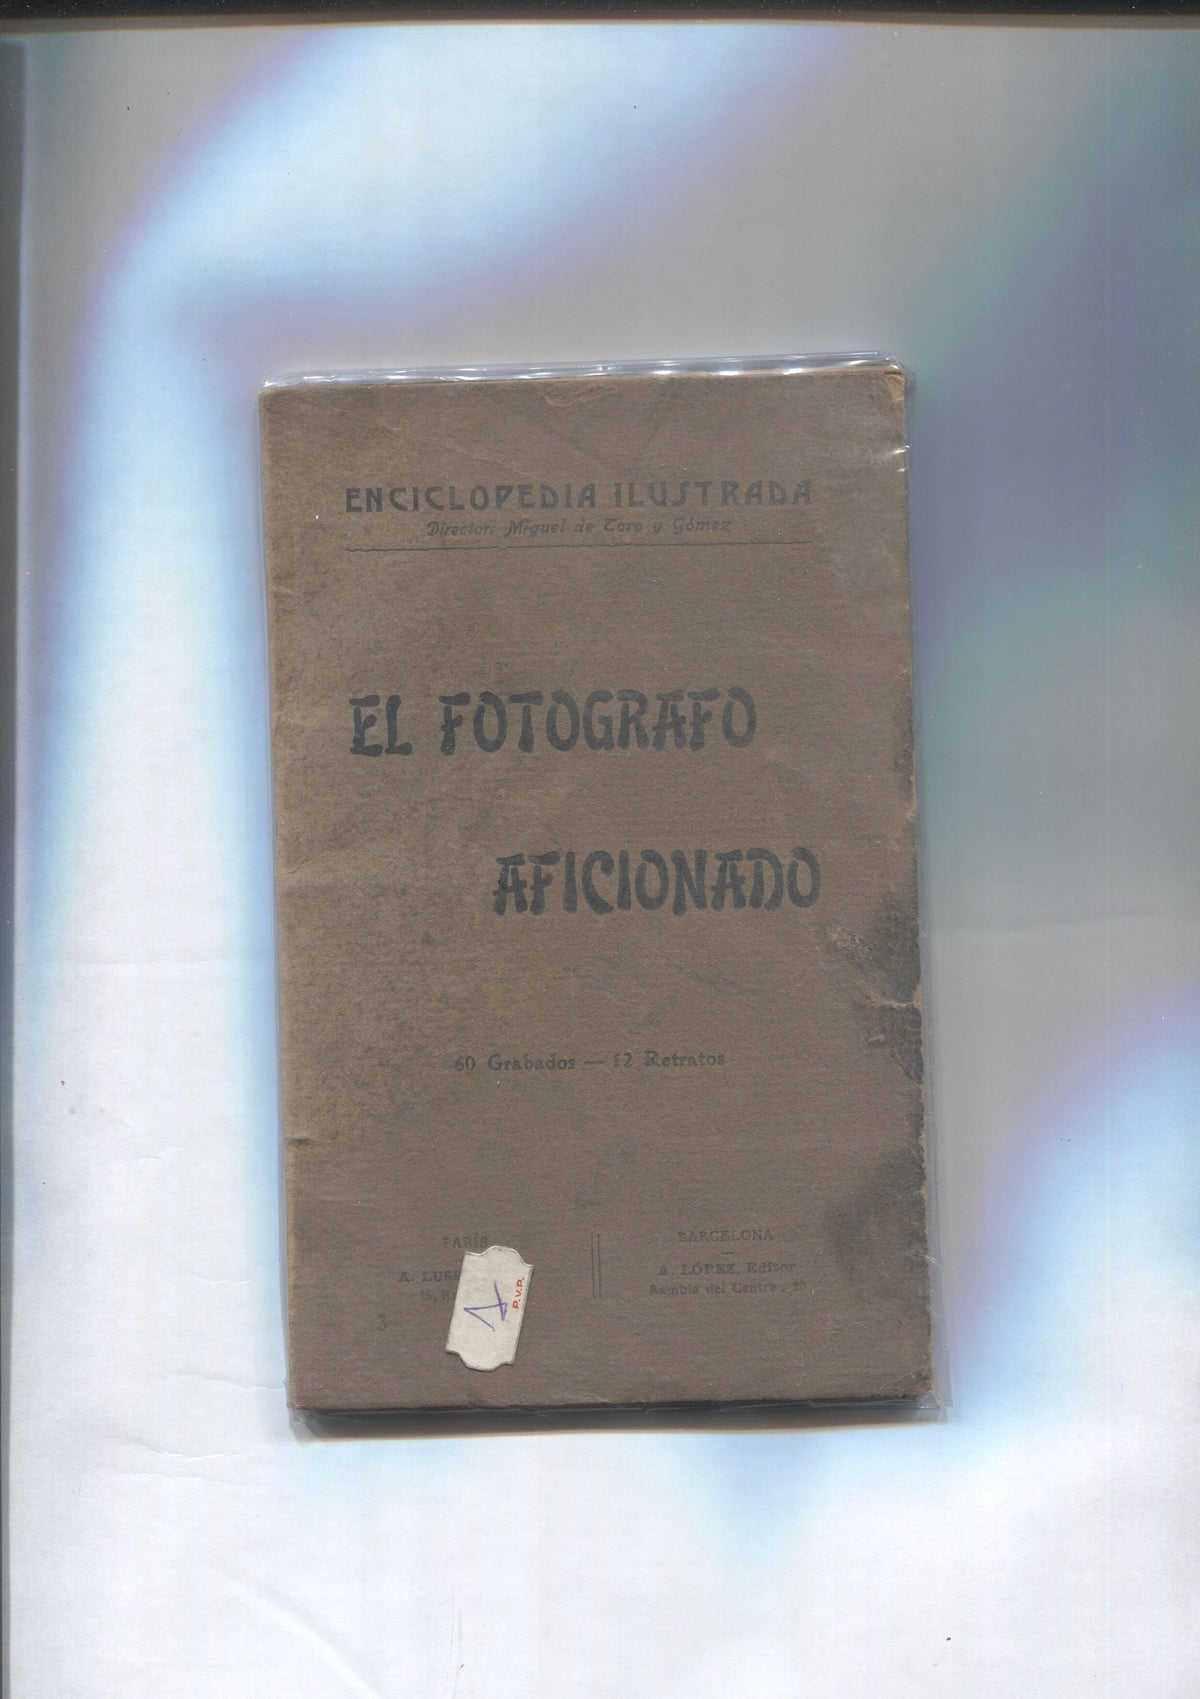 Enciclopedia ilustrada: El fotografo aficionado